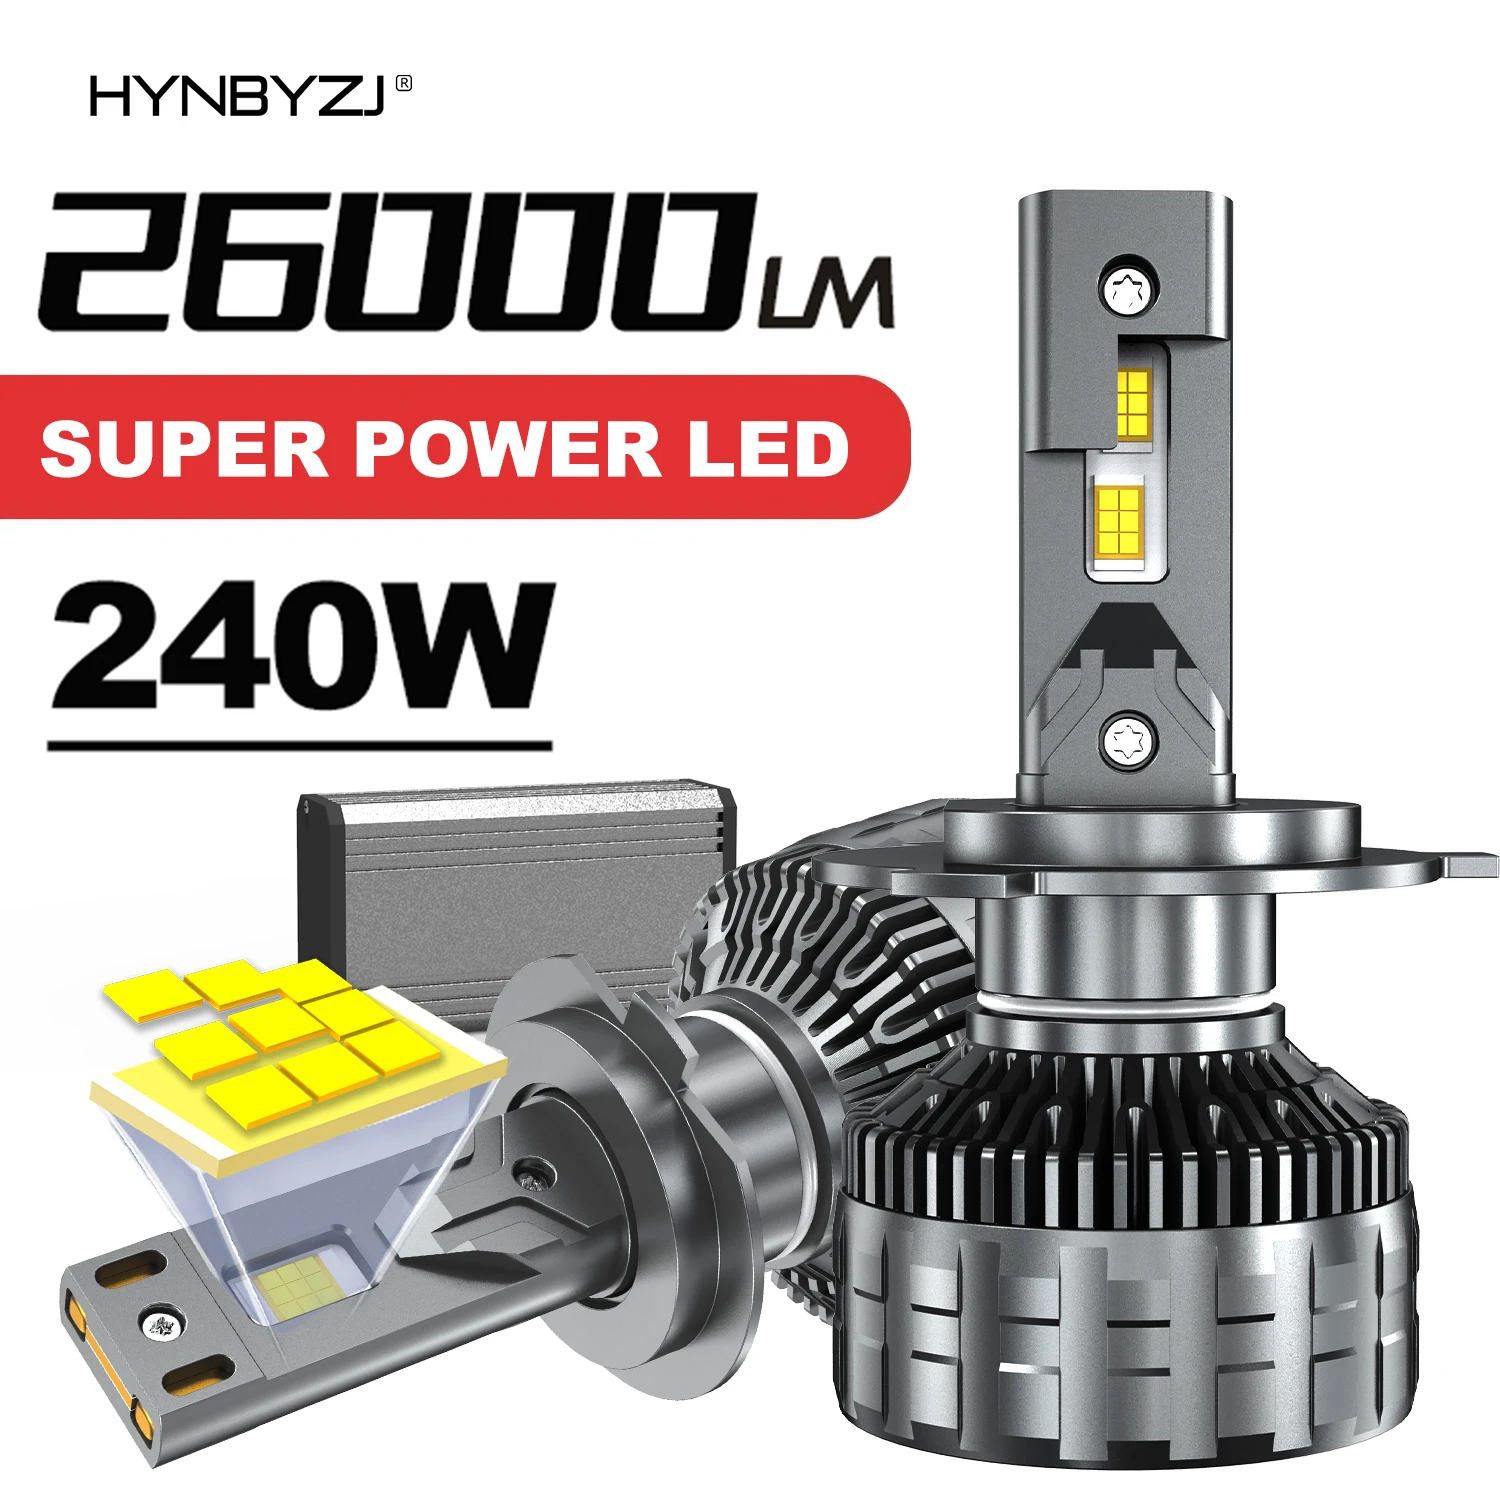 

HYNBYZJ 240W 26000LM H4 H7 LED Headlights H11 H1 H3 9005 HB3 9006 HB4 H8 H9 9012 HB5 9007 9008 H13 Headlamp 6000K LED Car Bulbs